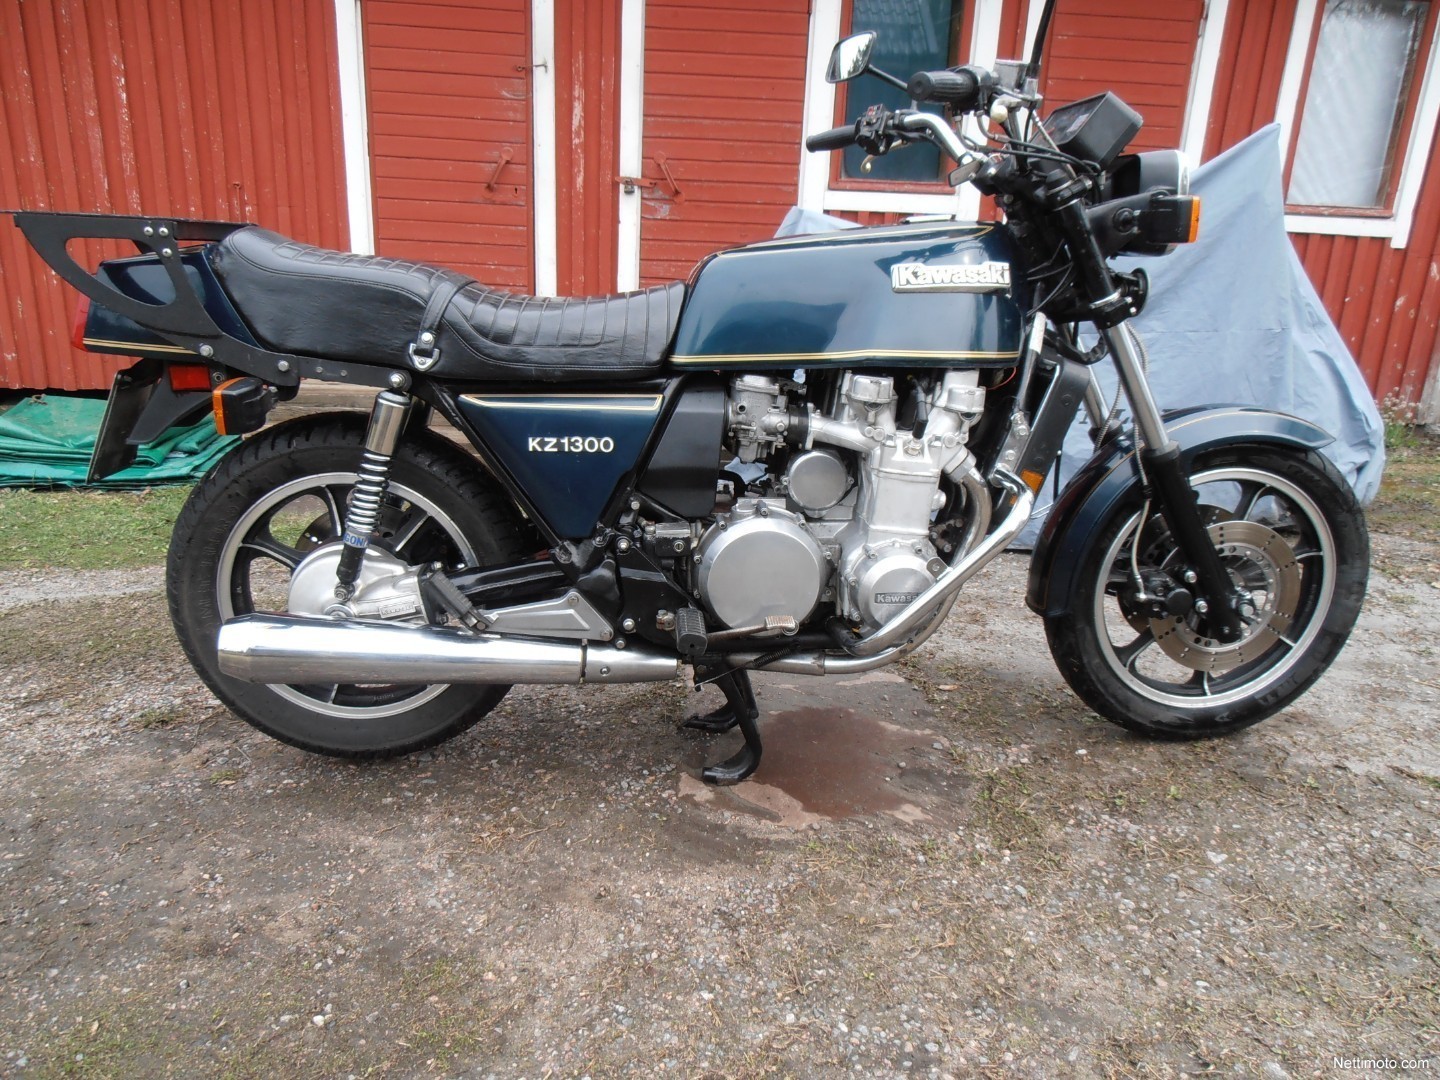 Kawasaki KZ 1300 1 300 cm³ 1979 - Imatra - Moottoripyörä - Nettimoto